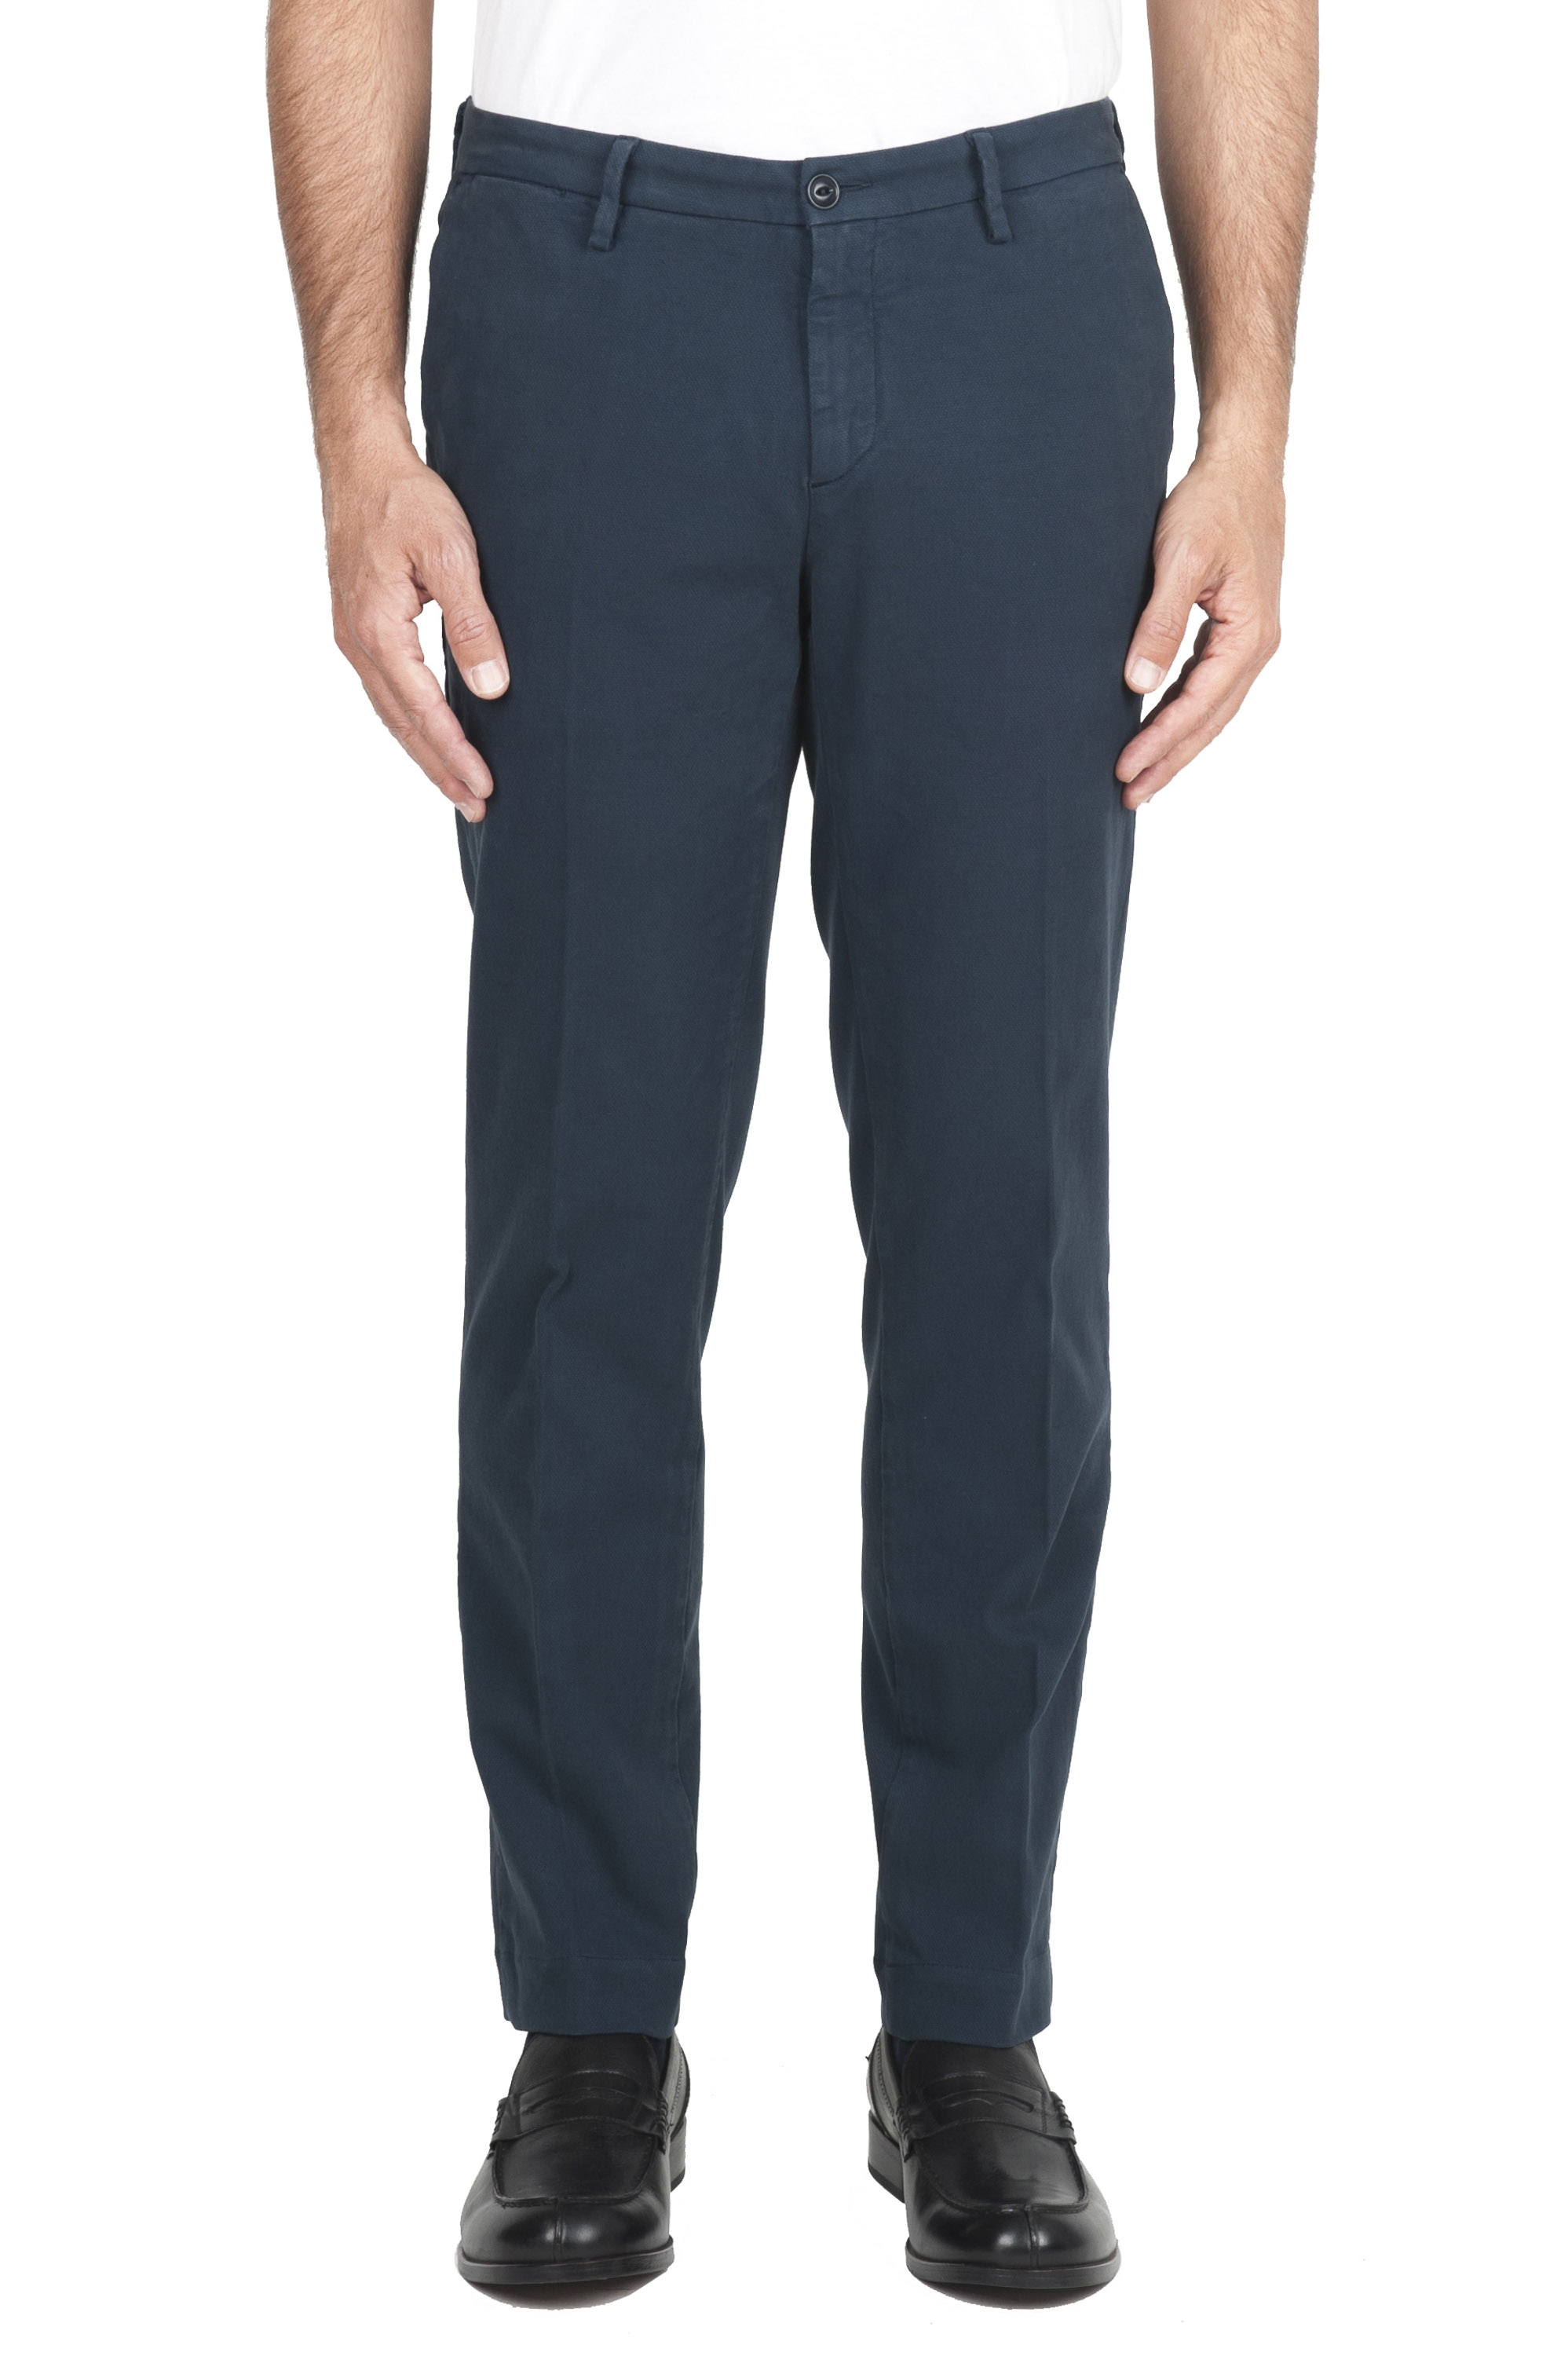 SBU 01544 Pantalones chinos clásicos en algodón elástico azul 01